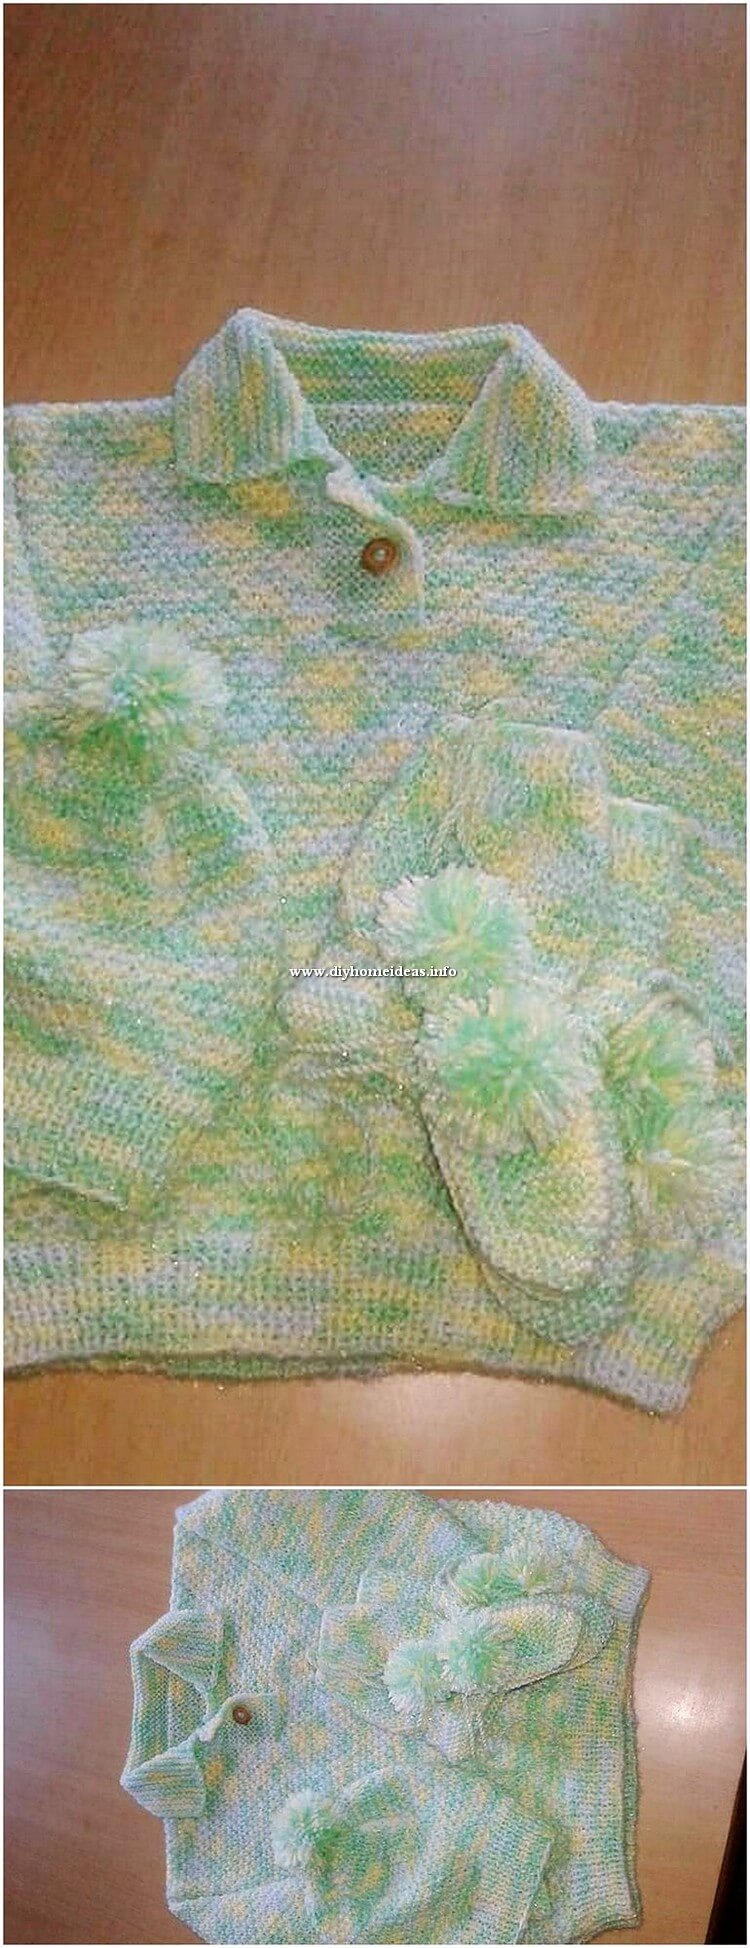 Crochet Baby Shirt